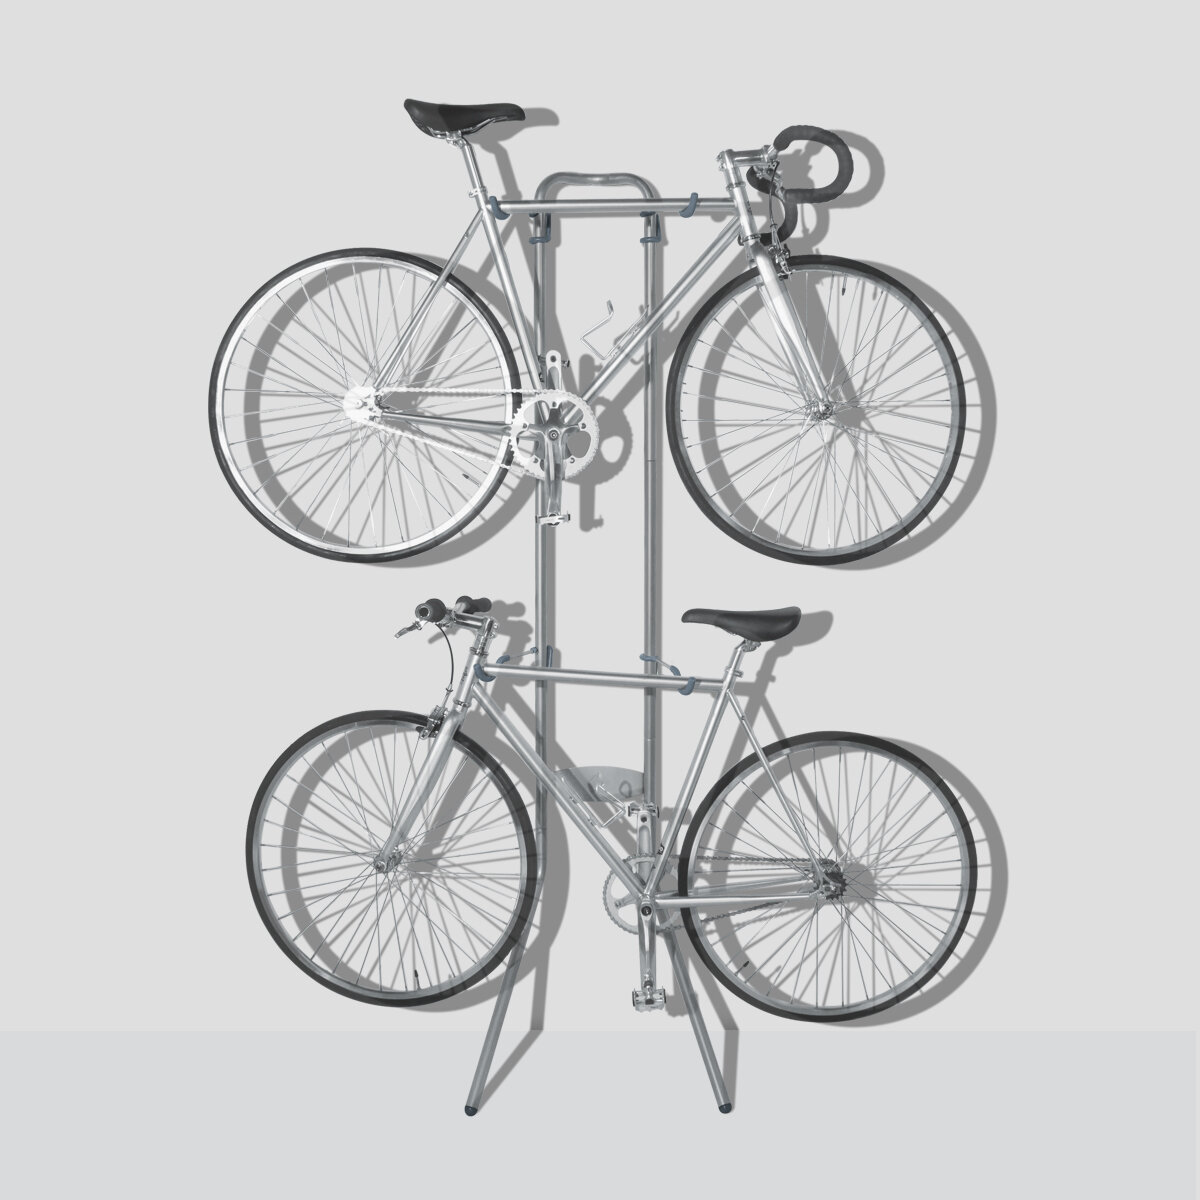 gravity bike rack